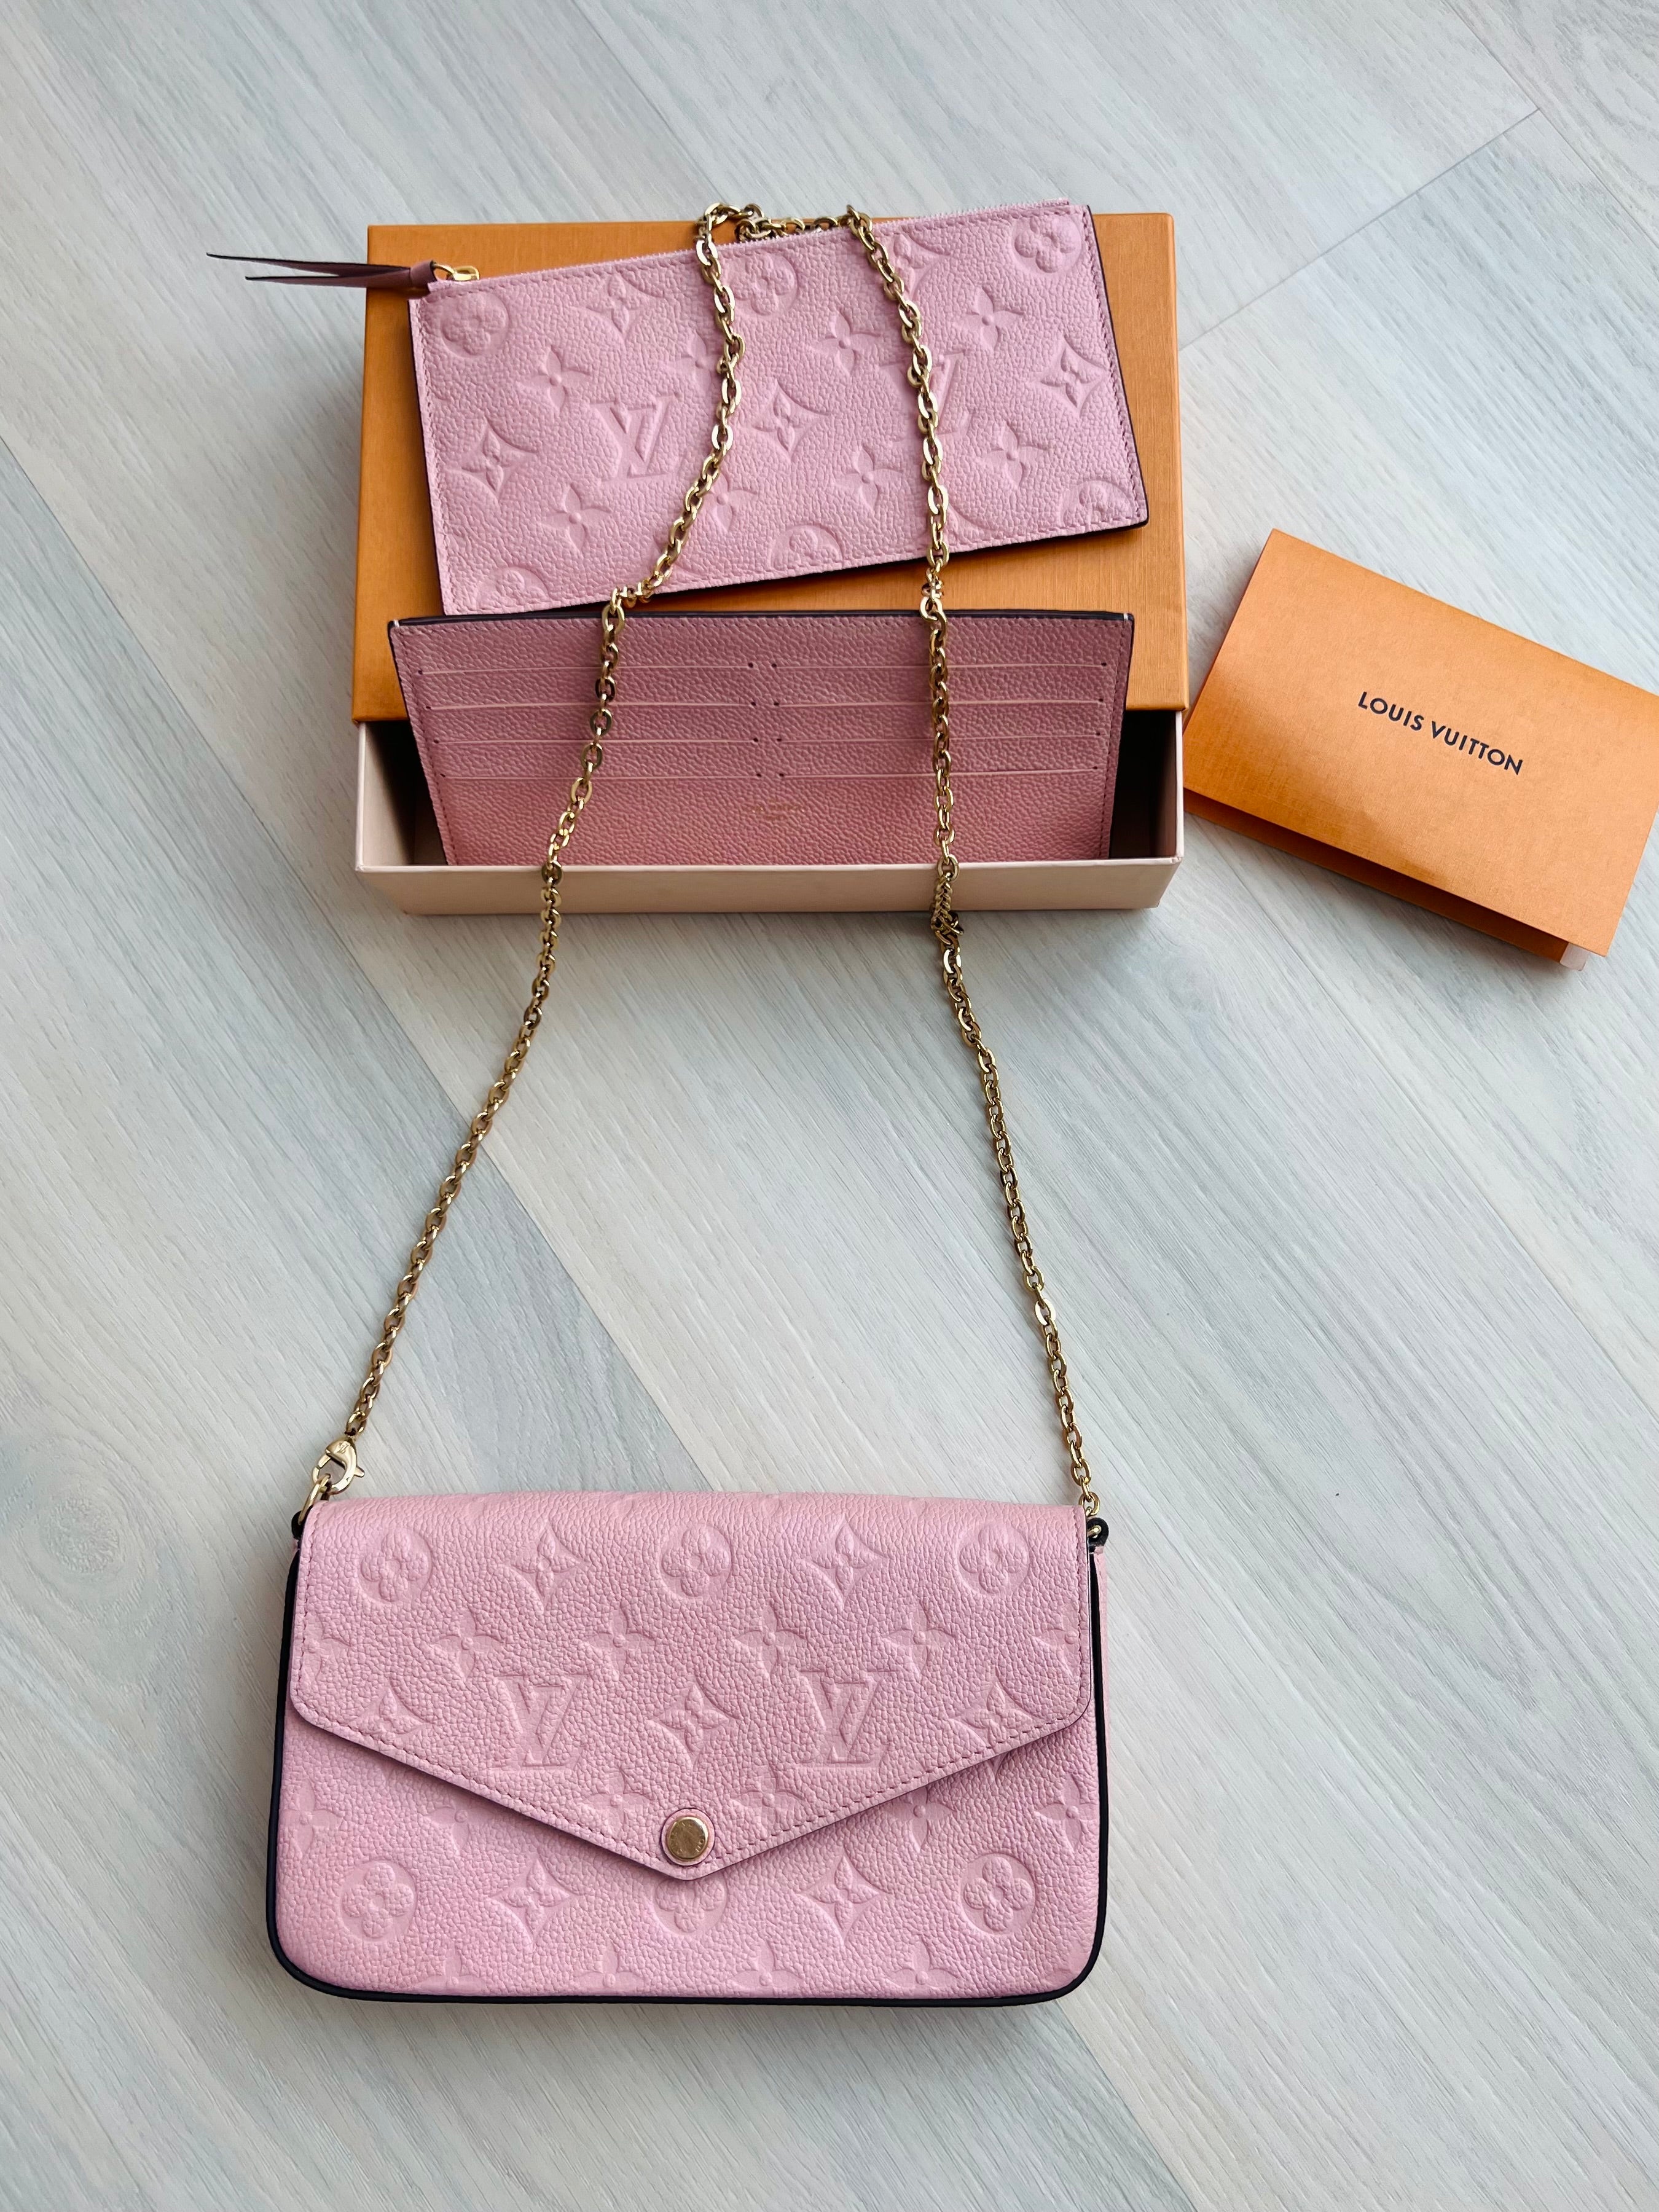 Louis Vuitton POCHETTE FELICIE Bag Unbox & Review with A Bandeau